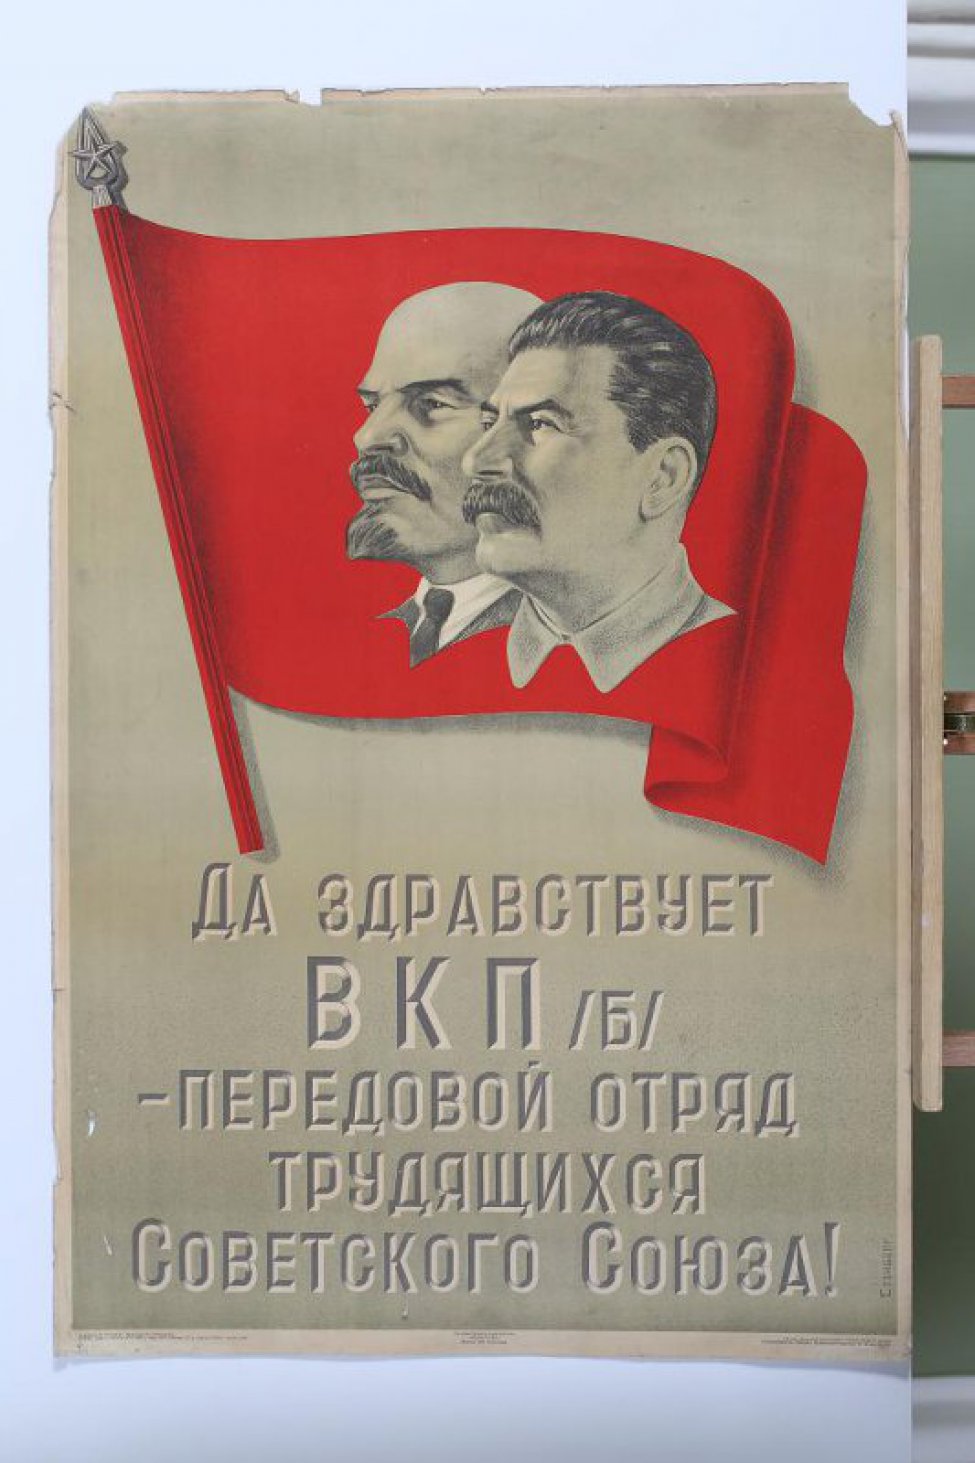 Изображен вверху на красном знамени портреты тт.Ленина и Сталина. Внизу текст: "Да здравствует... союза".